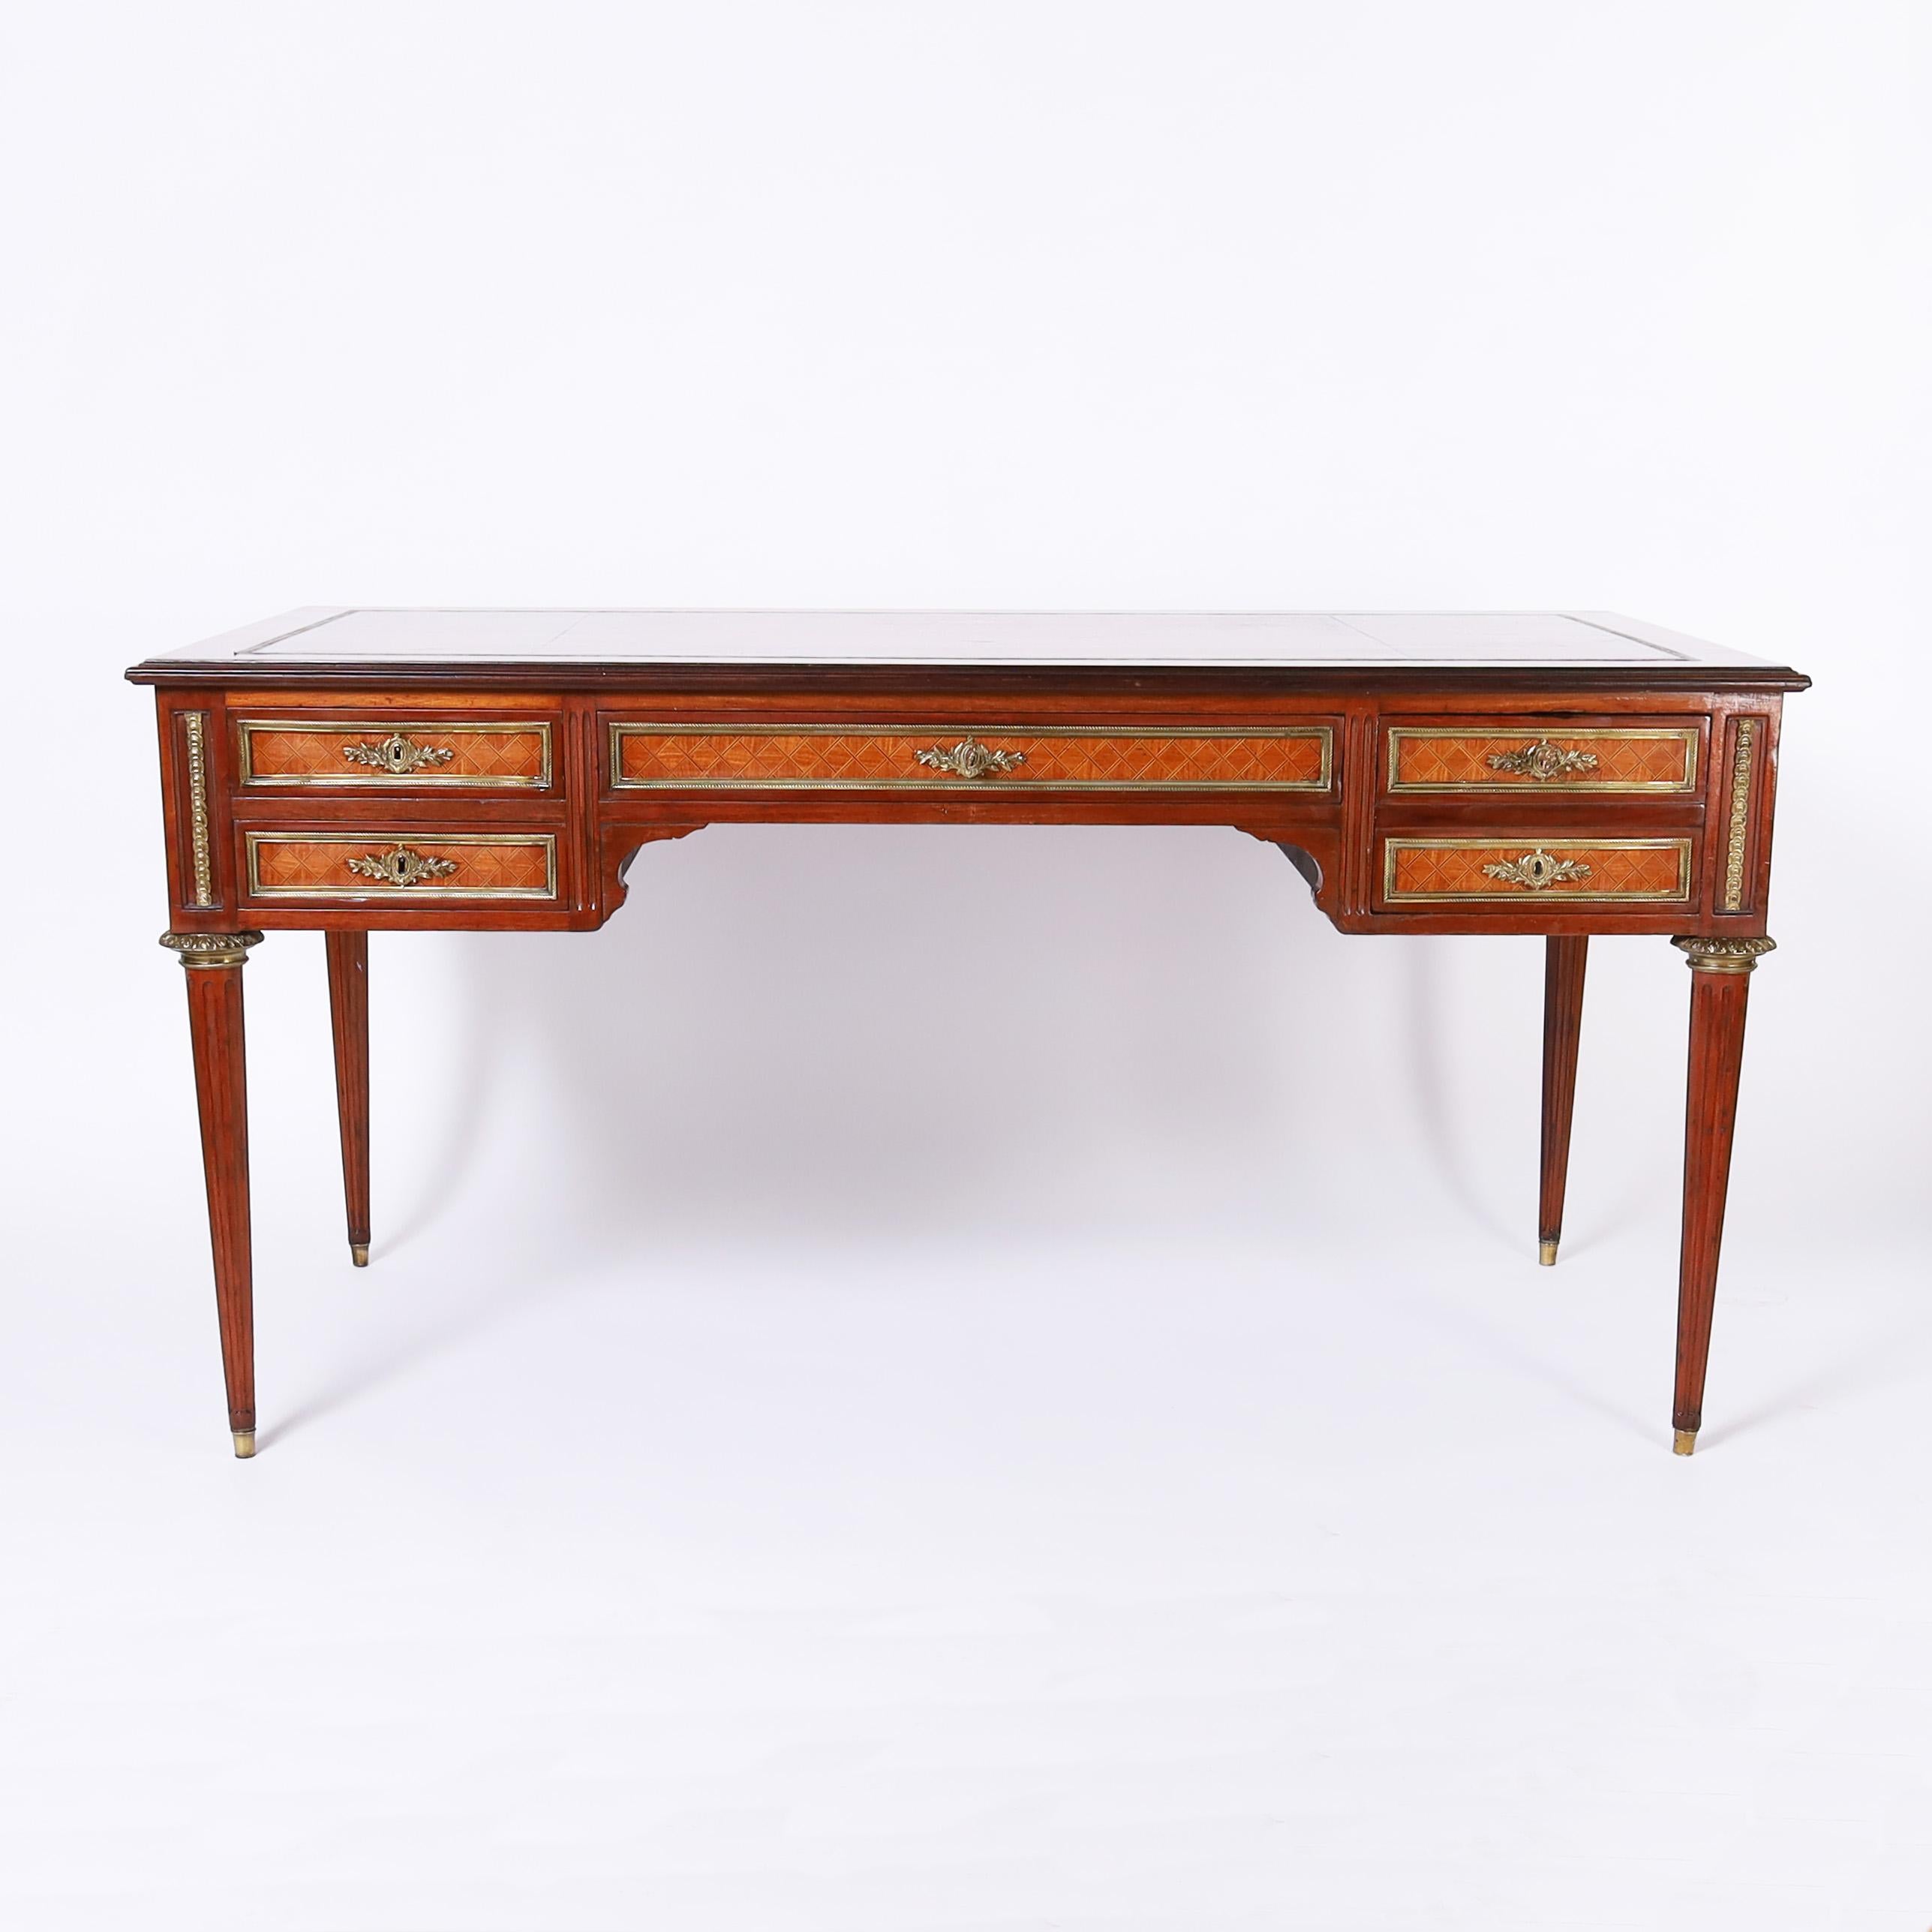 Raffinierter Schreibtisch im Louis-XVI-Stil aus dem 19. Jahrhundert mit einer originalen Platte aus genarbtem Leder auf einem Gehäuse mit drei Schubladen auf der Vorderseite und einer Rückseite mit falschen Schubladen, geometrischen Intarsien,